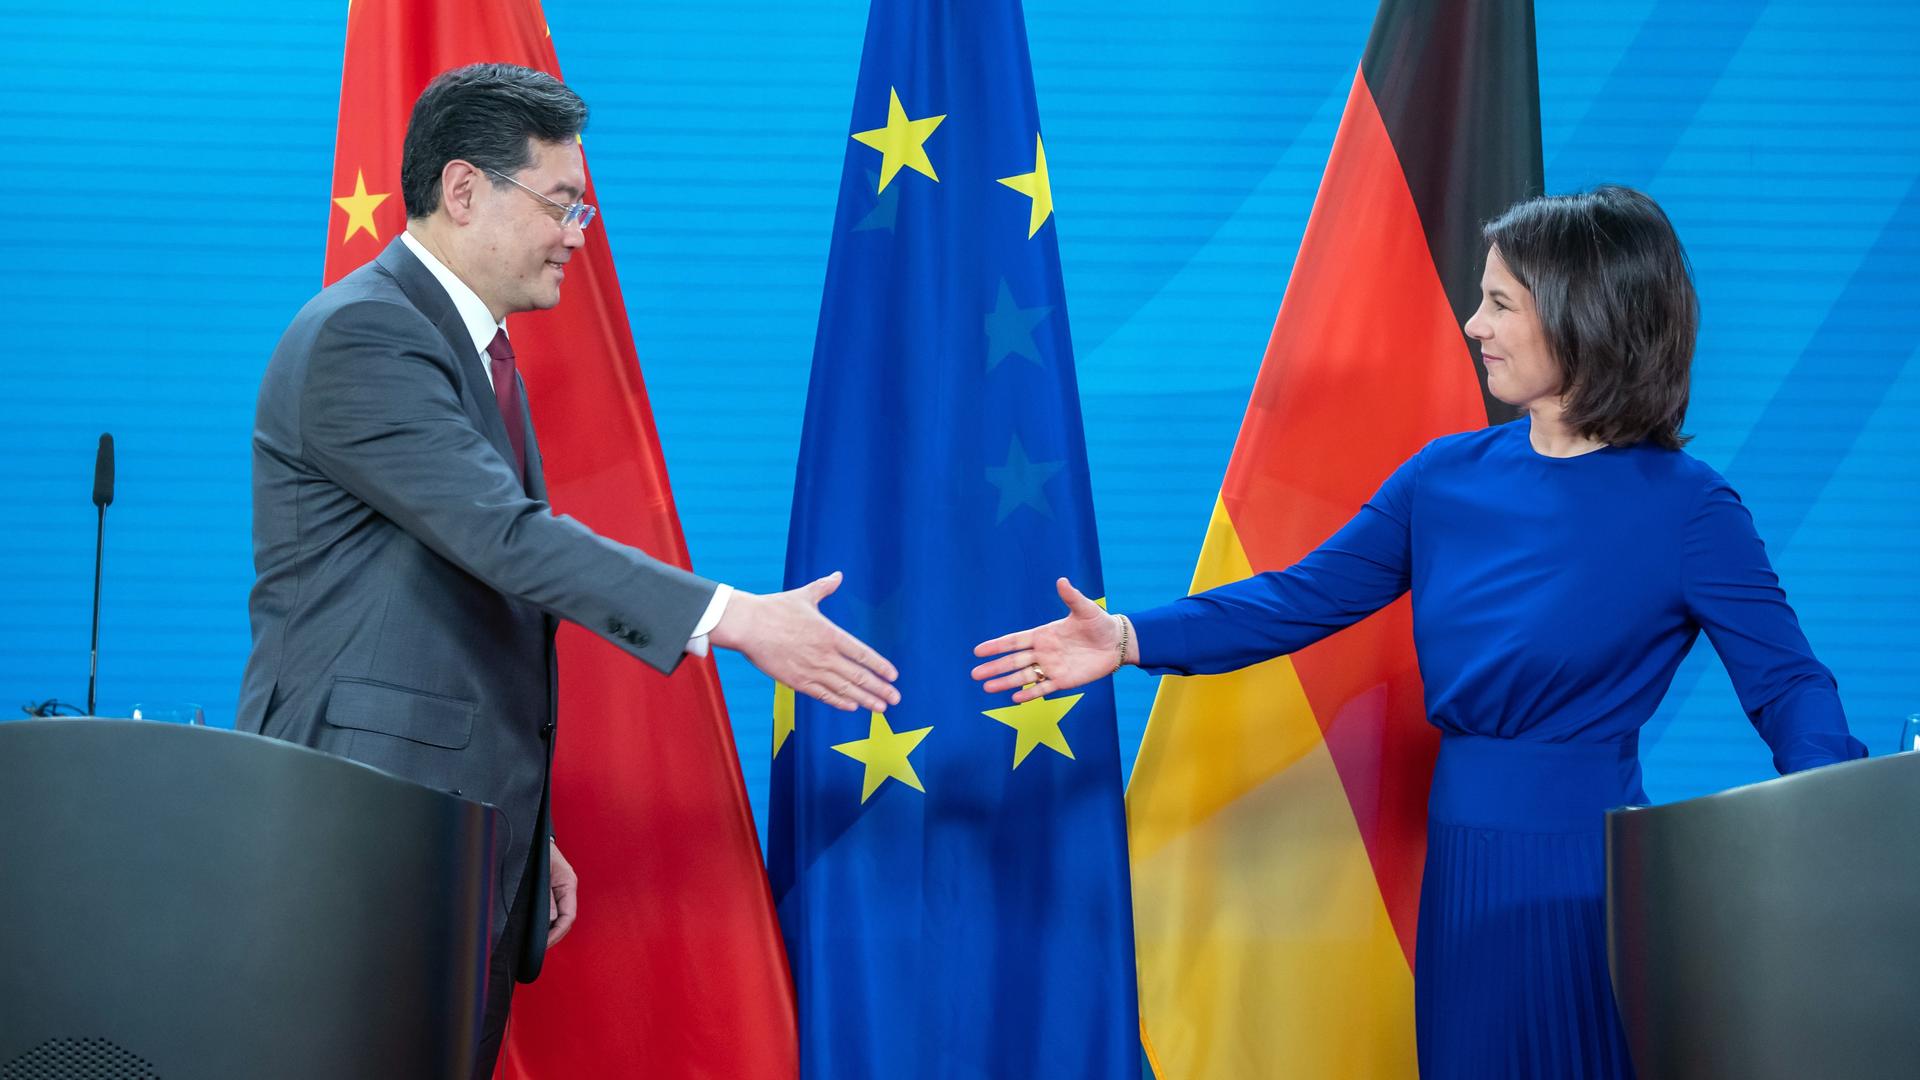 Berlin: Annalena Baerbock, Außenministerin, nimmt neben ihrem Amtskollegen, Qin Gang, Außenminister von China, an einer Pressekonferenz nach dem bilateralen Gespräch im Auswärtigen Amt teil. Sie schütteln sich die Hände. Hinter ihnen die Fahnen von China, der EU und Deutschland.